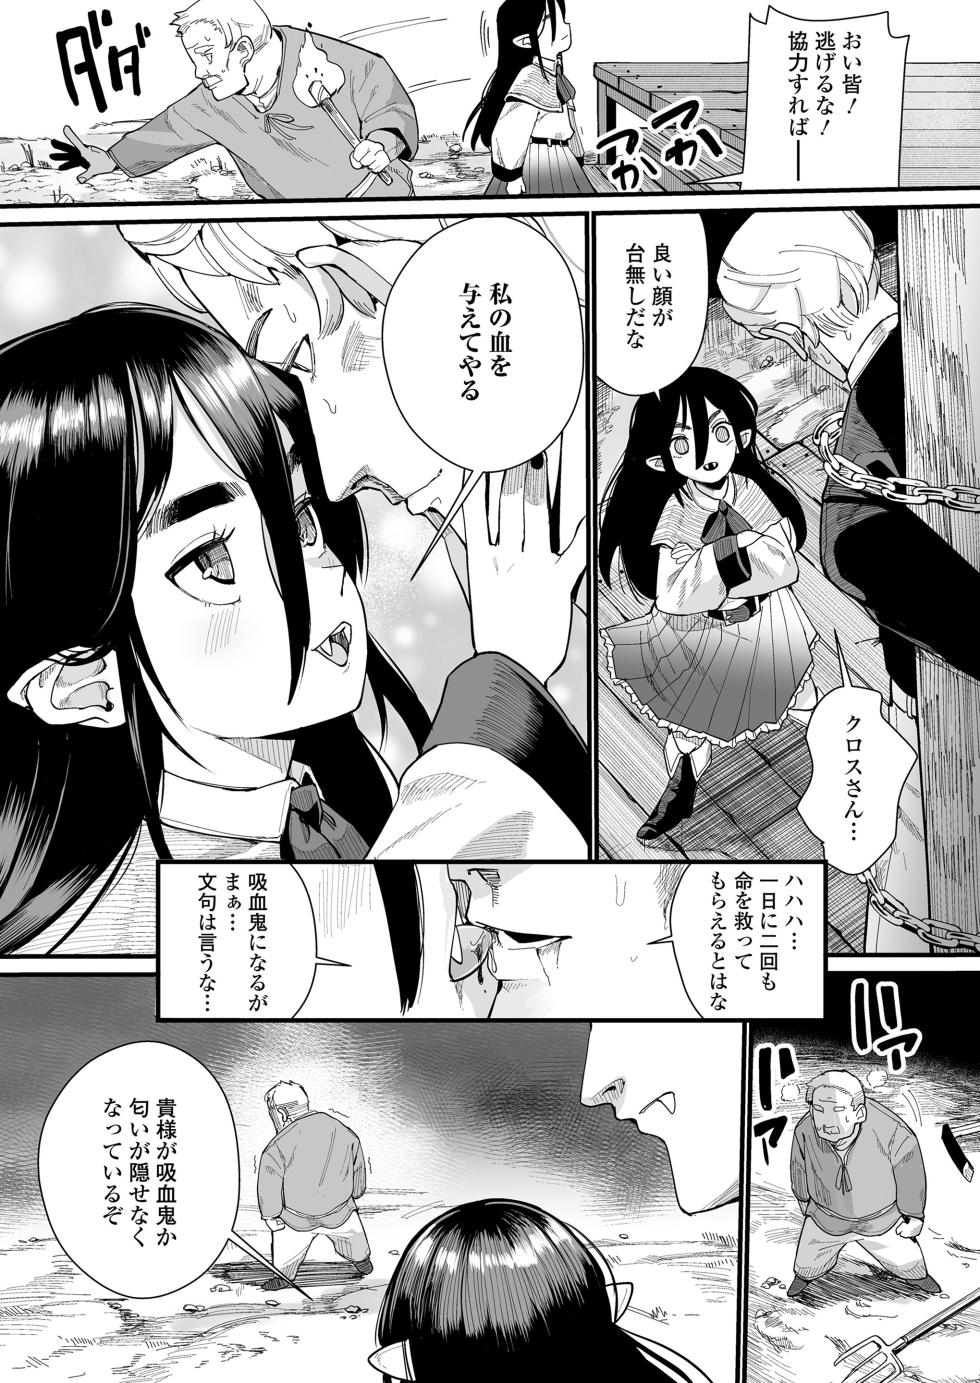 Towako 15 [Digital] - Page 37